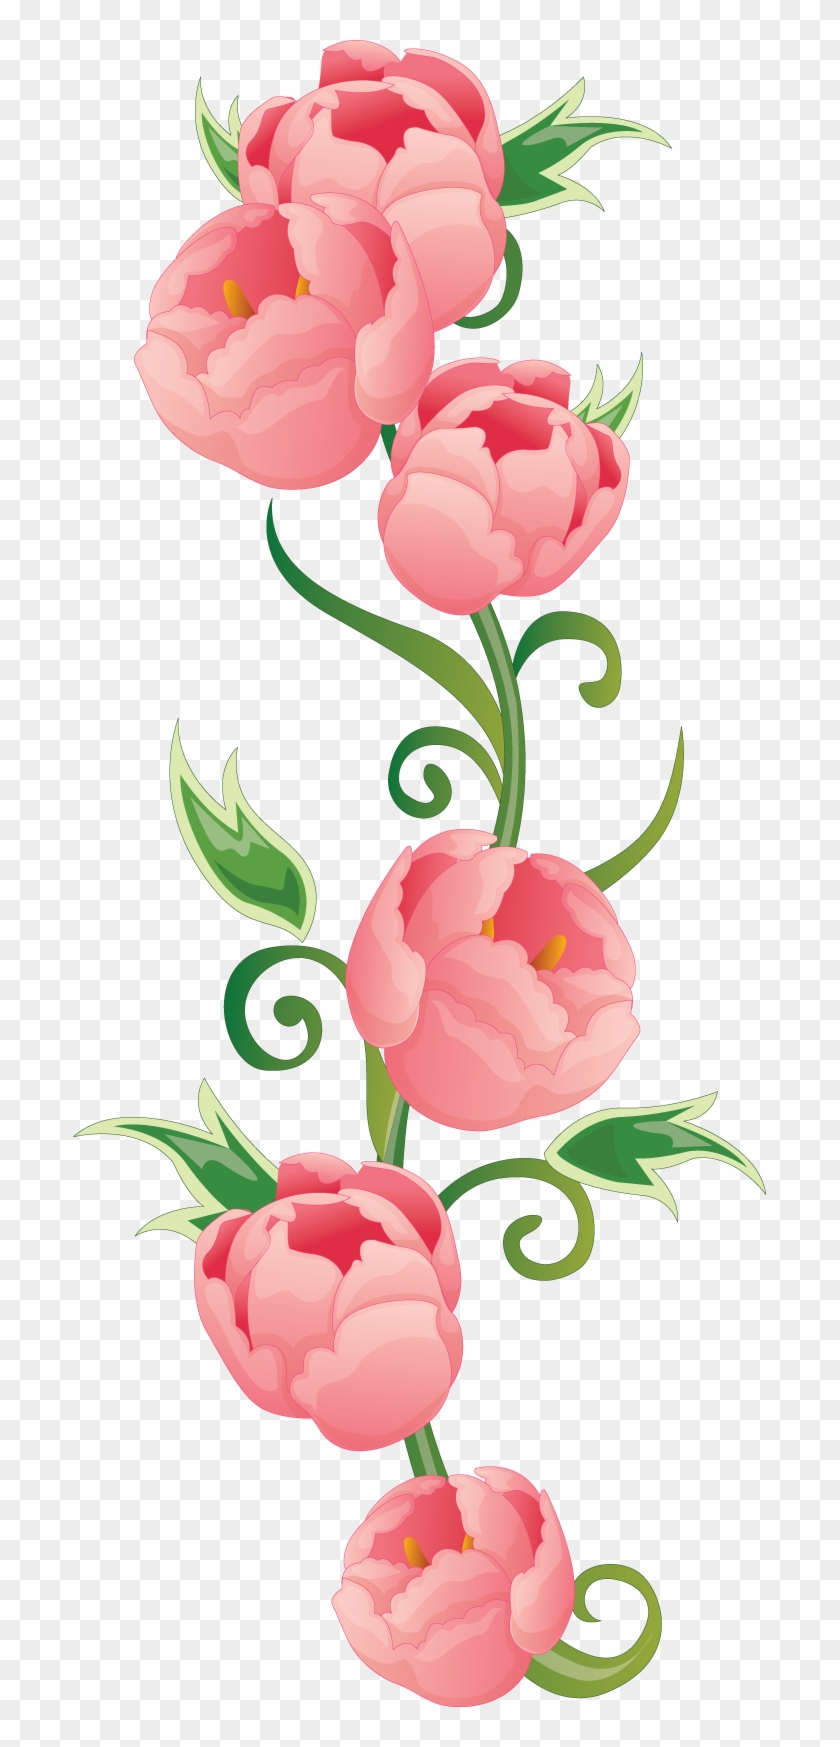 Flower Floral Design Clip Art - Flower Floral Design Clip Art #301702